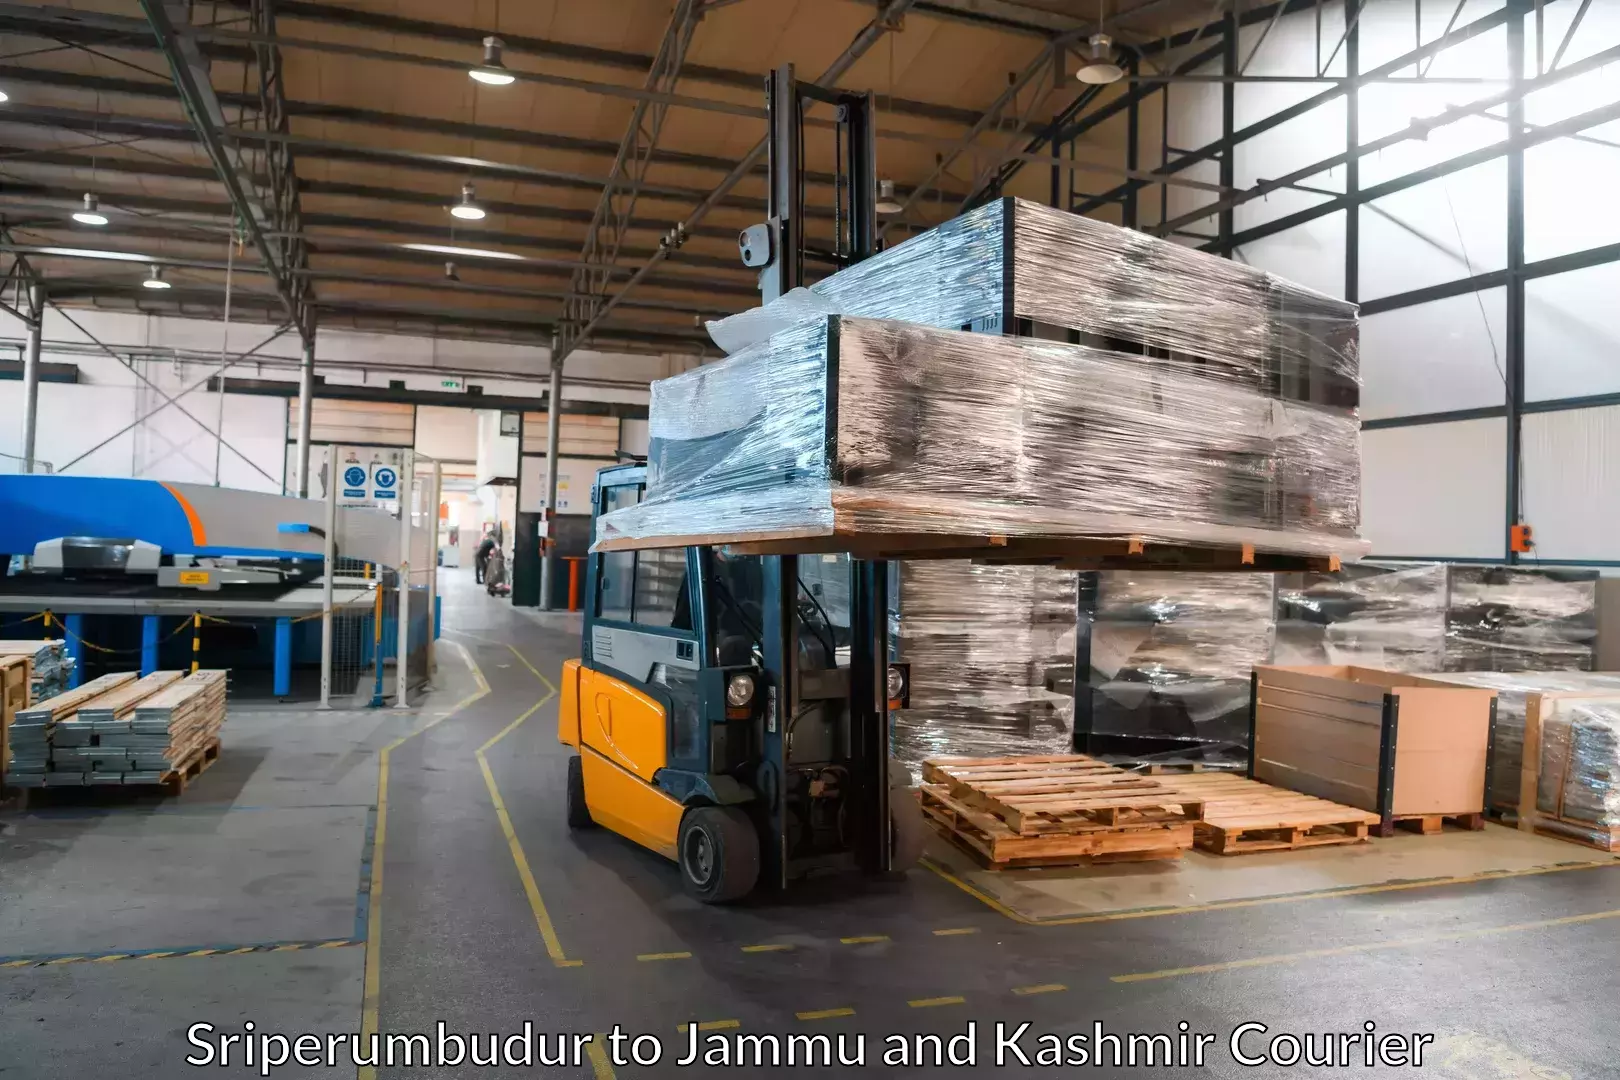 Furniture transport specialists Sriperumbudur to Jammu and Kashmir